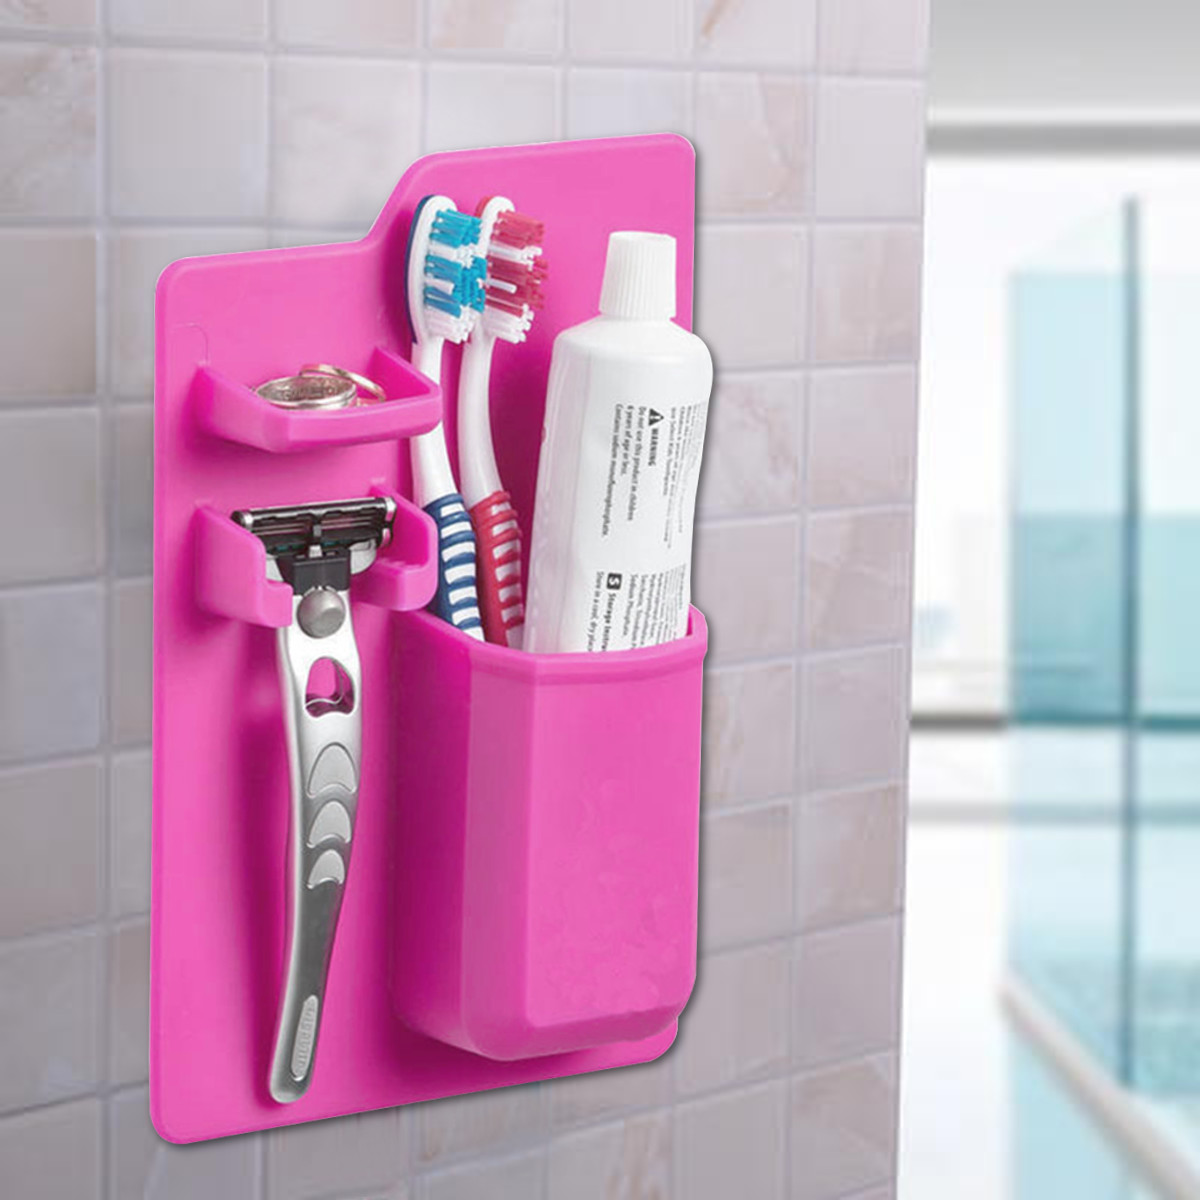 Bathroom-Kitchen-Silicone-Toothbrush-Holder-Toothpaste-Bracket-Mirror-Organizer-Storage-Space-Rack-1322584-4